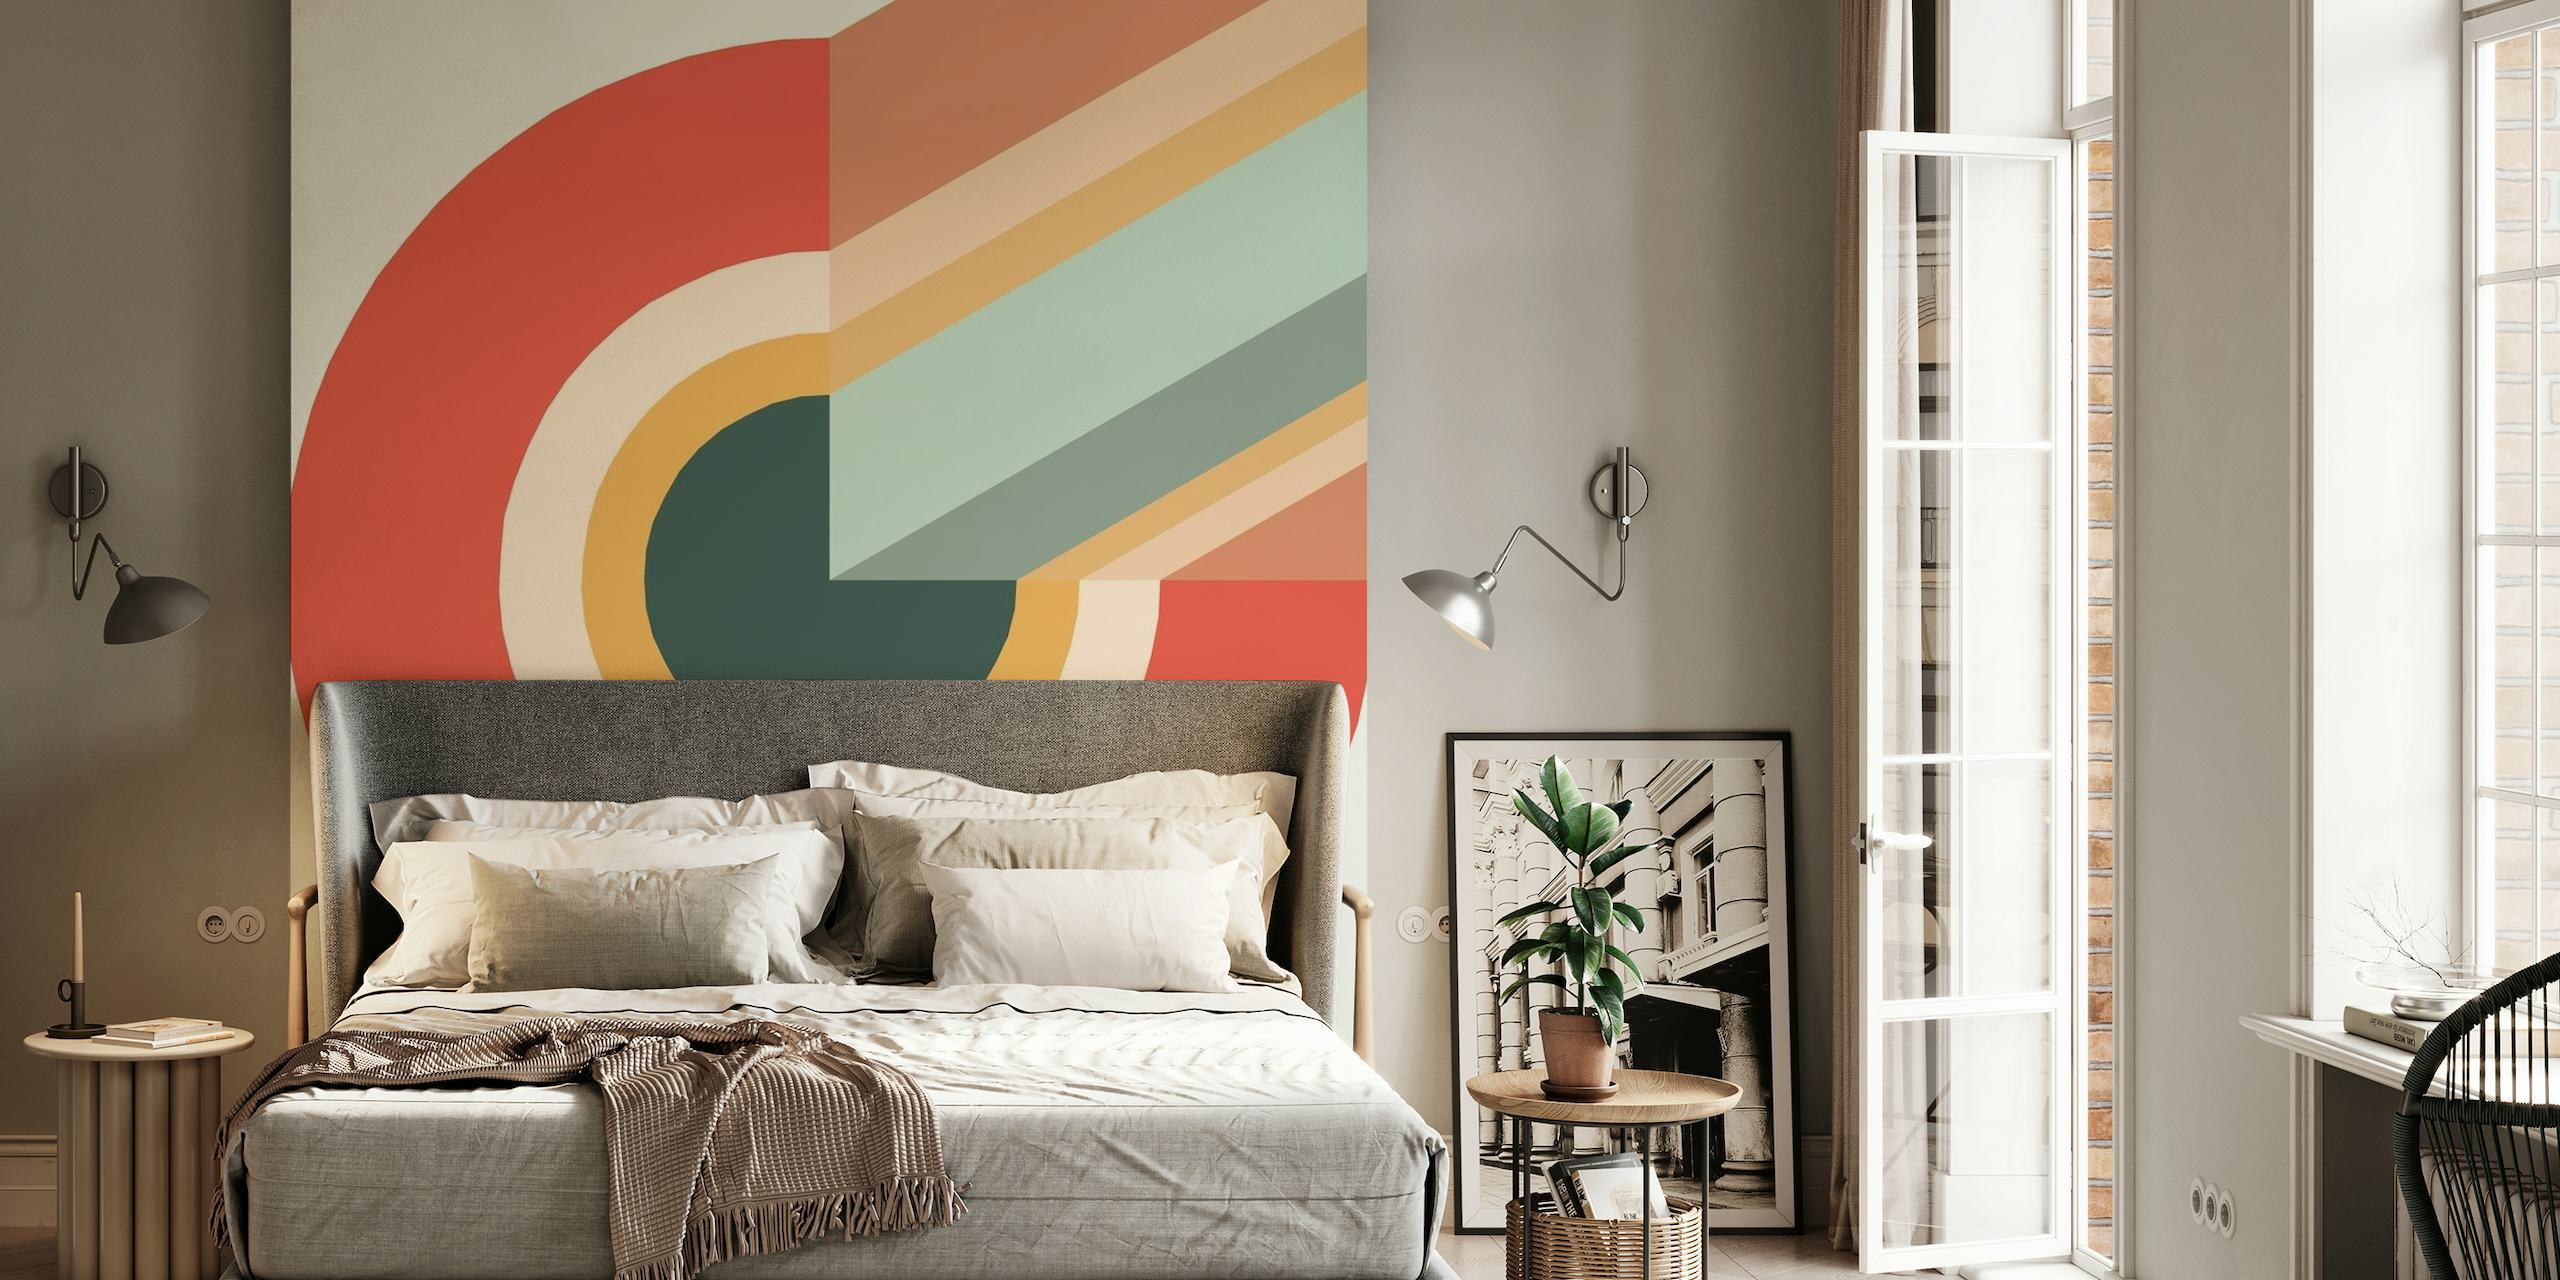 Abstrakt swirl vægmaleri med harmonisk blanding af varme og kølige farver